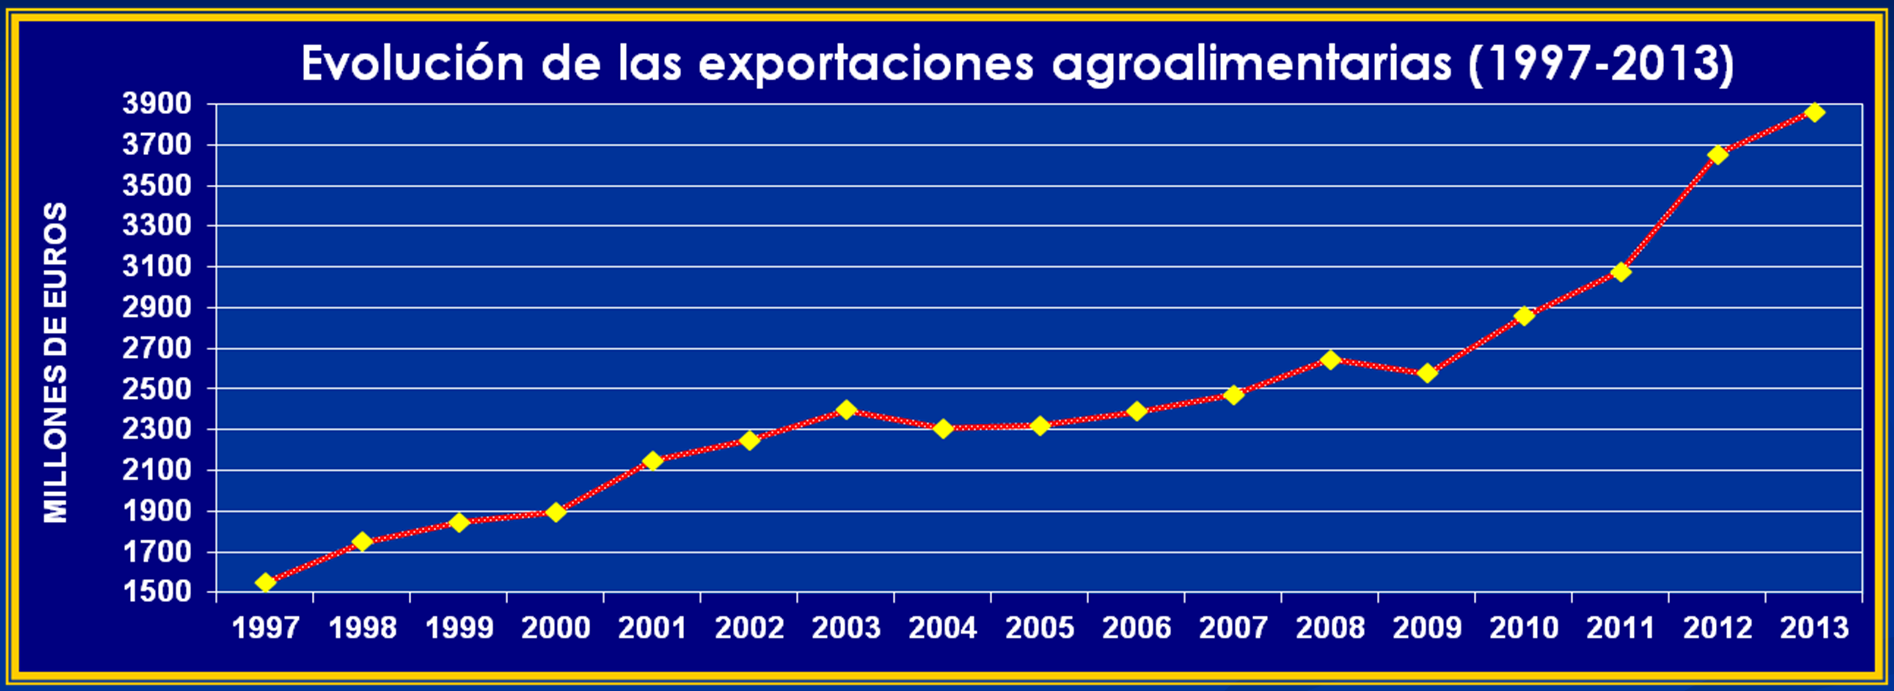 El regadío en la Región de Murcia Importancia de la agricultura en Murcia: Las Exportaciones Agroalimentarias de la Región de Murcia asciende a 3.866 millones de euros (11% del total nacional).